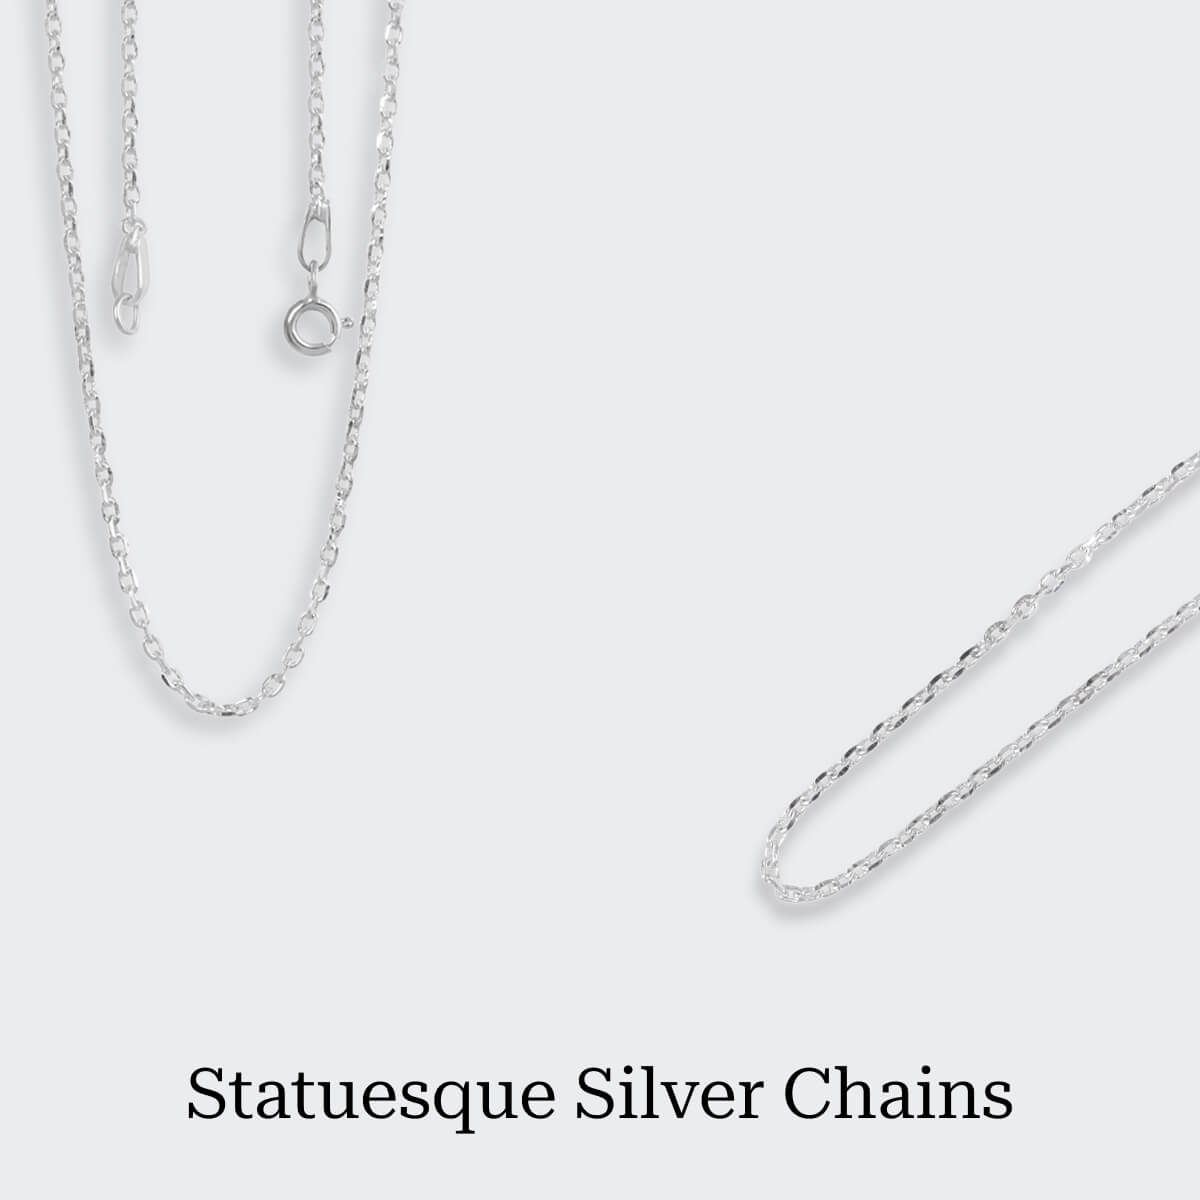 Plain Silver Chain